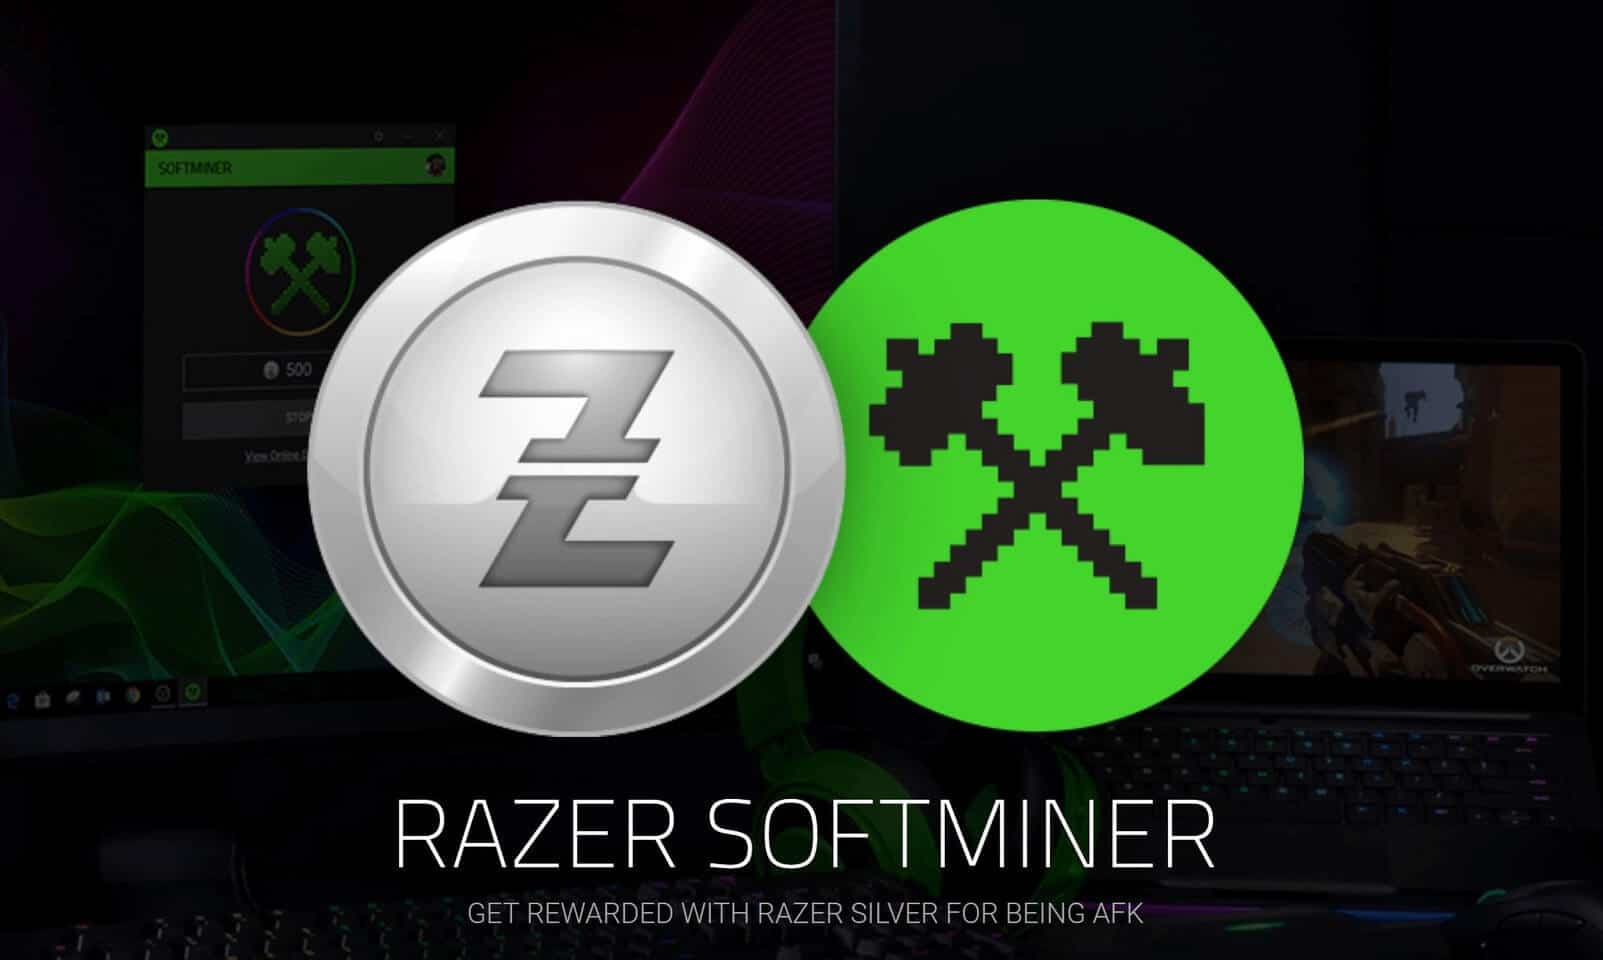 Razer's New Mine Cryptocurrency Program Criticized By Users